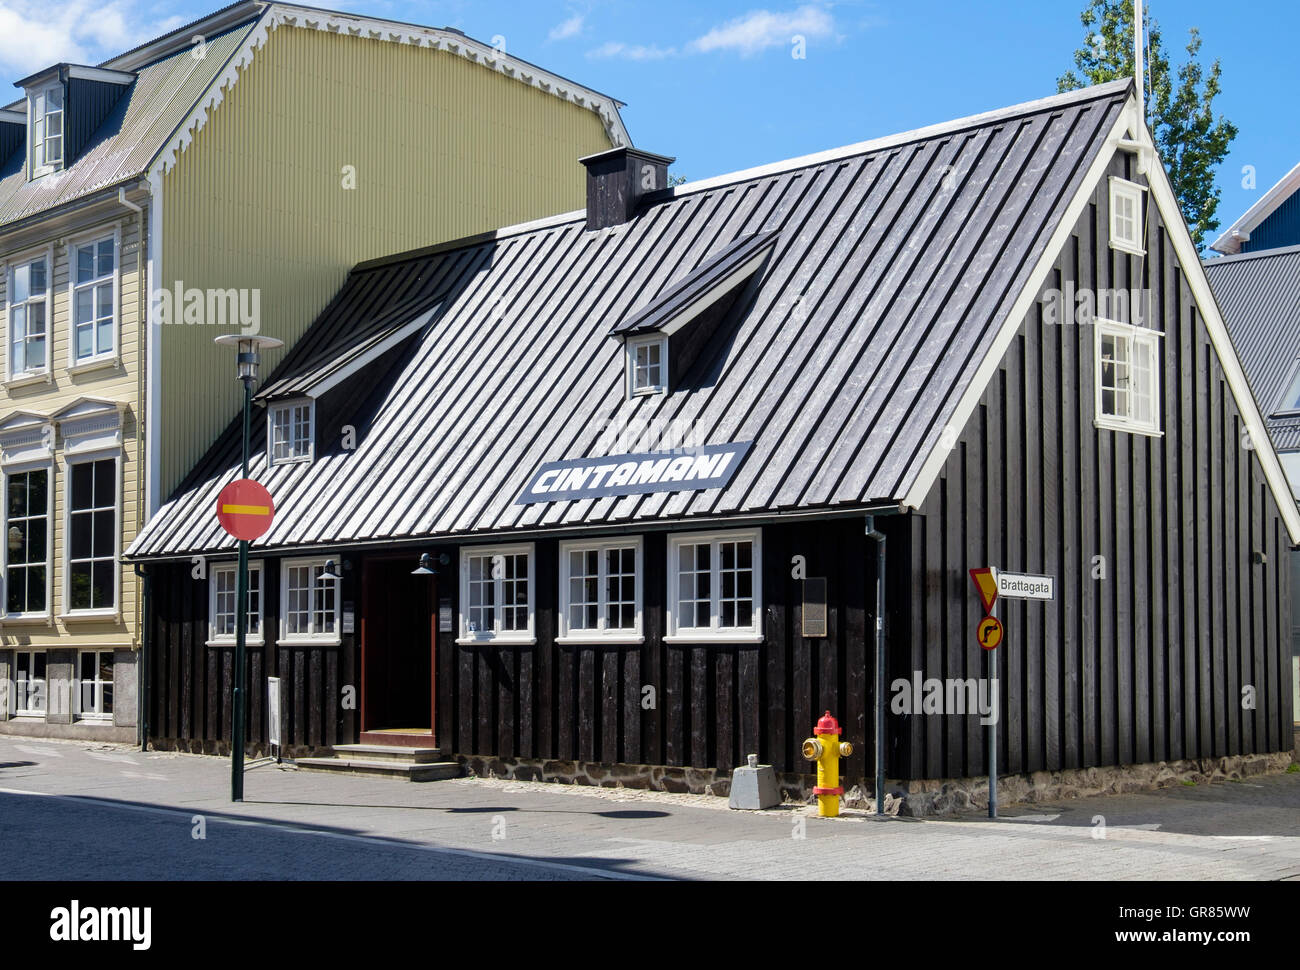 Oldest house now a restaurant in traditional old wooden building. Aðalstræti, Reykjavik, Iceland Stock Photo